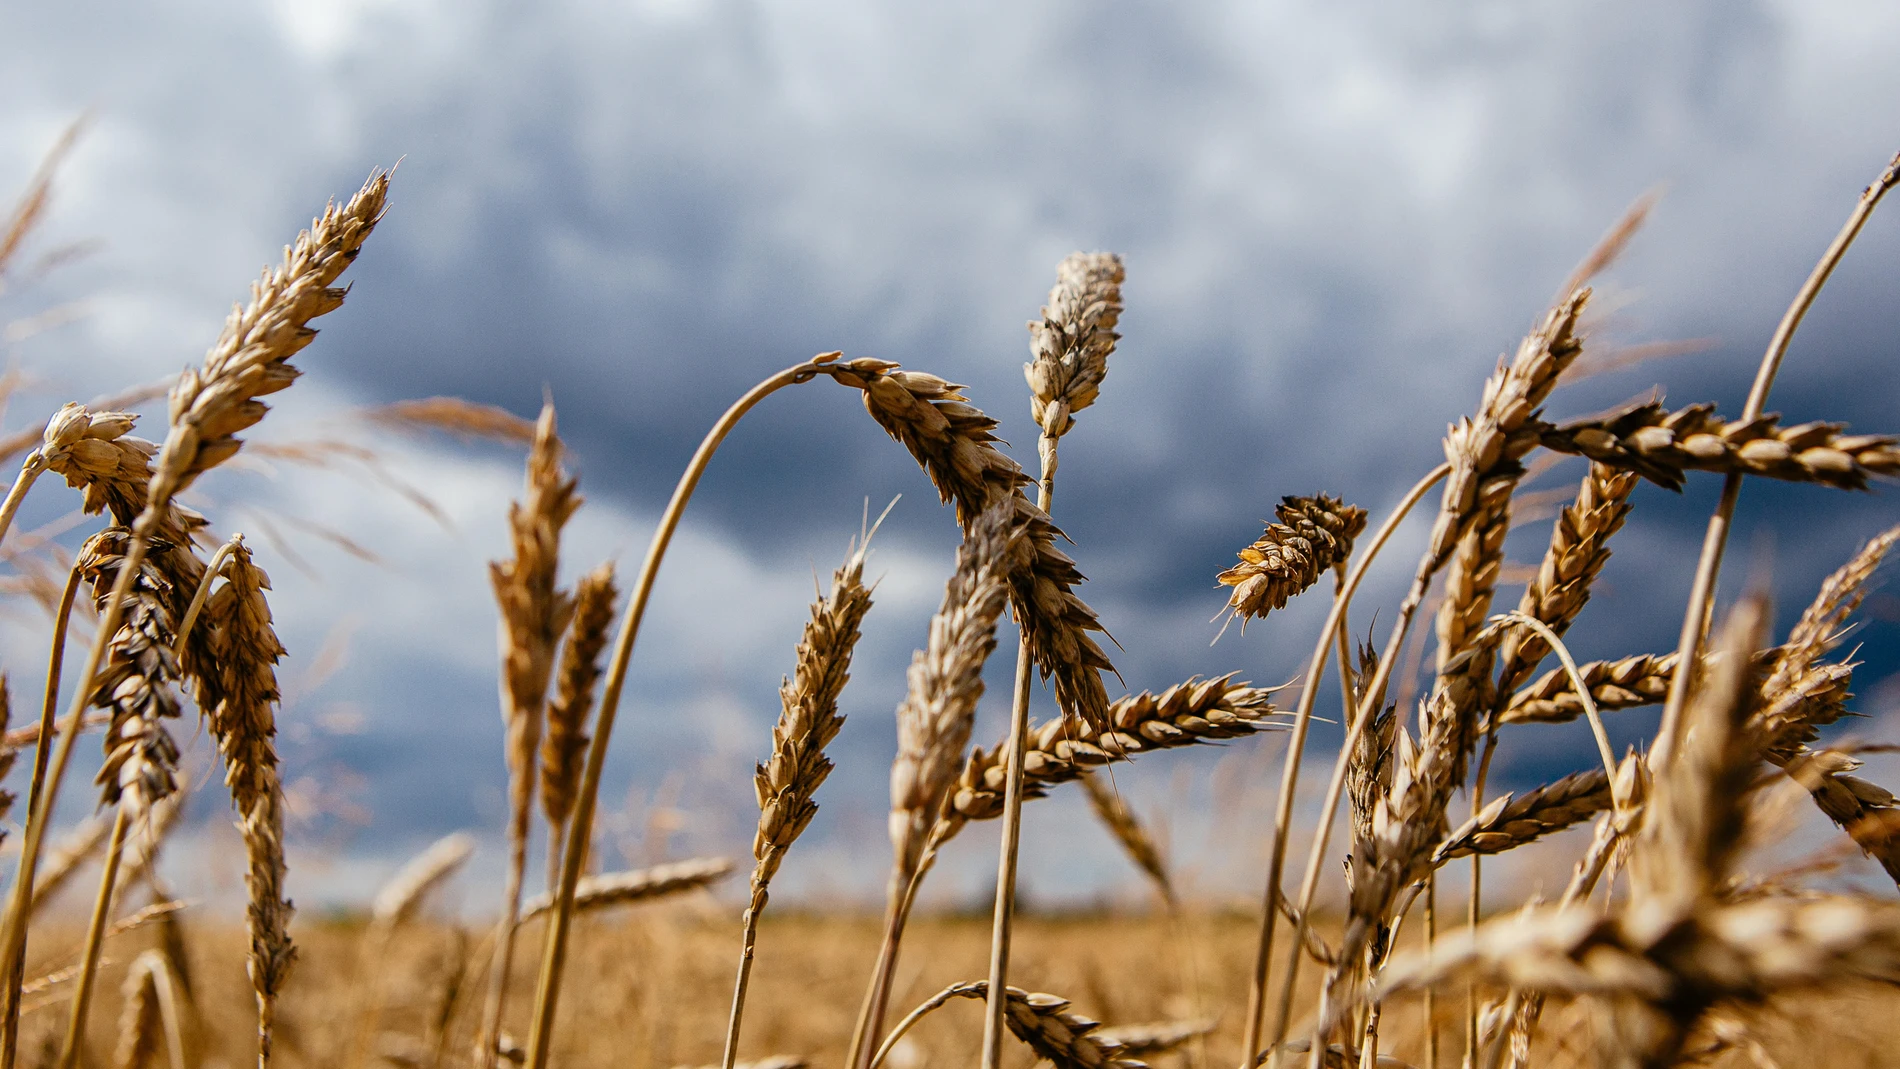 En 2022, se alcanzó una producción de 12,8 millones de toneladas para el trigo blando, duro y cebada